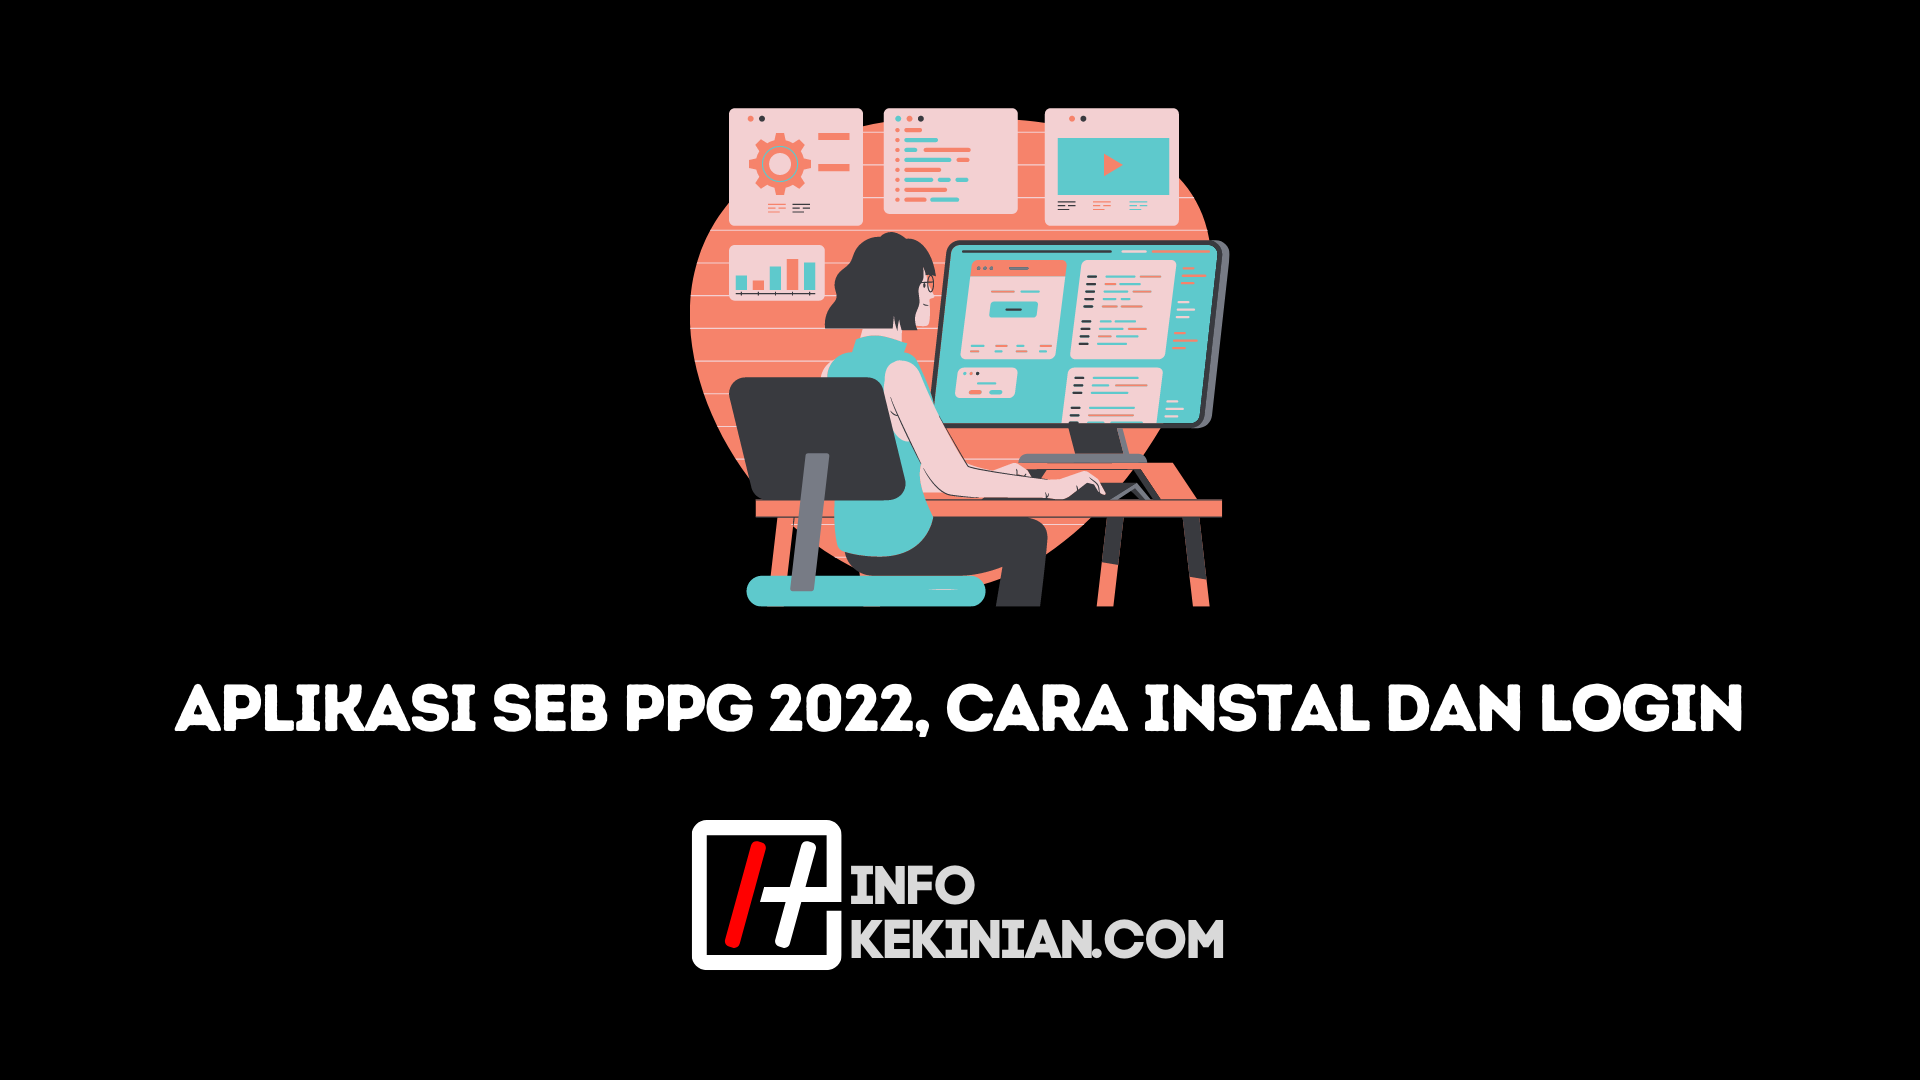 Download Aplikasi SEB PPG 2022